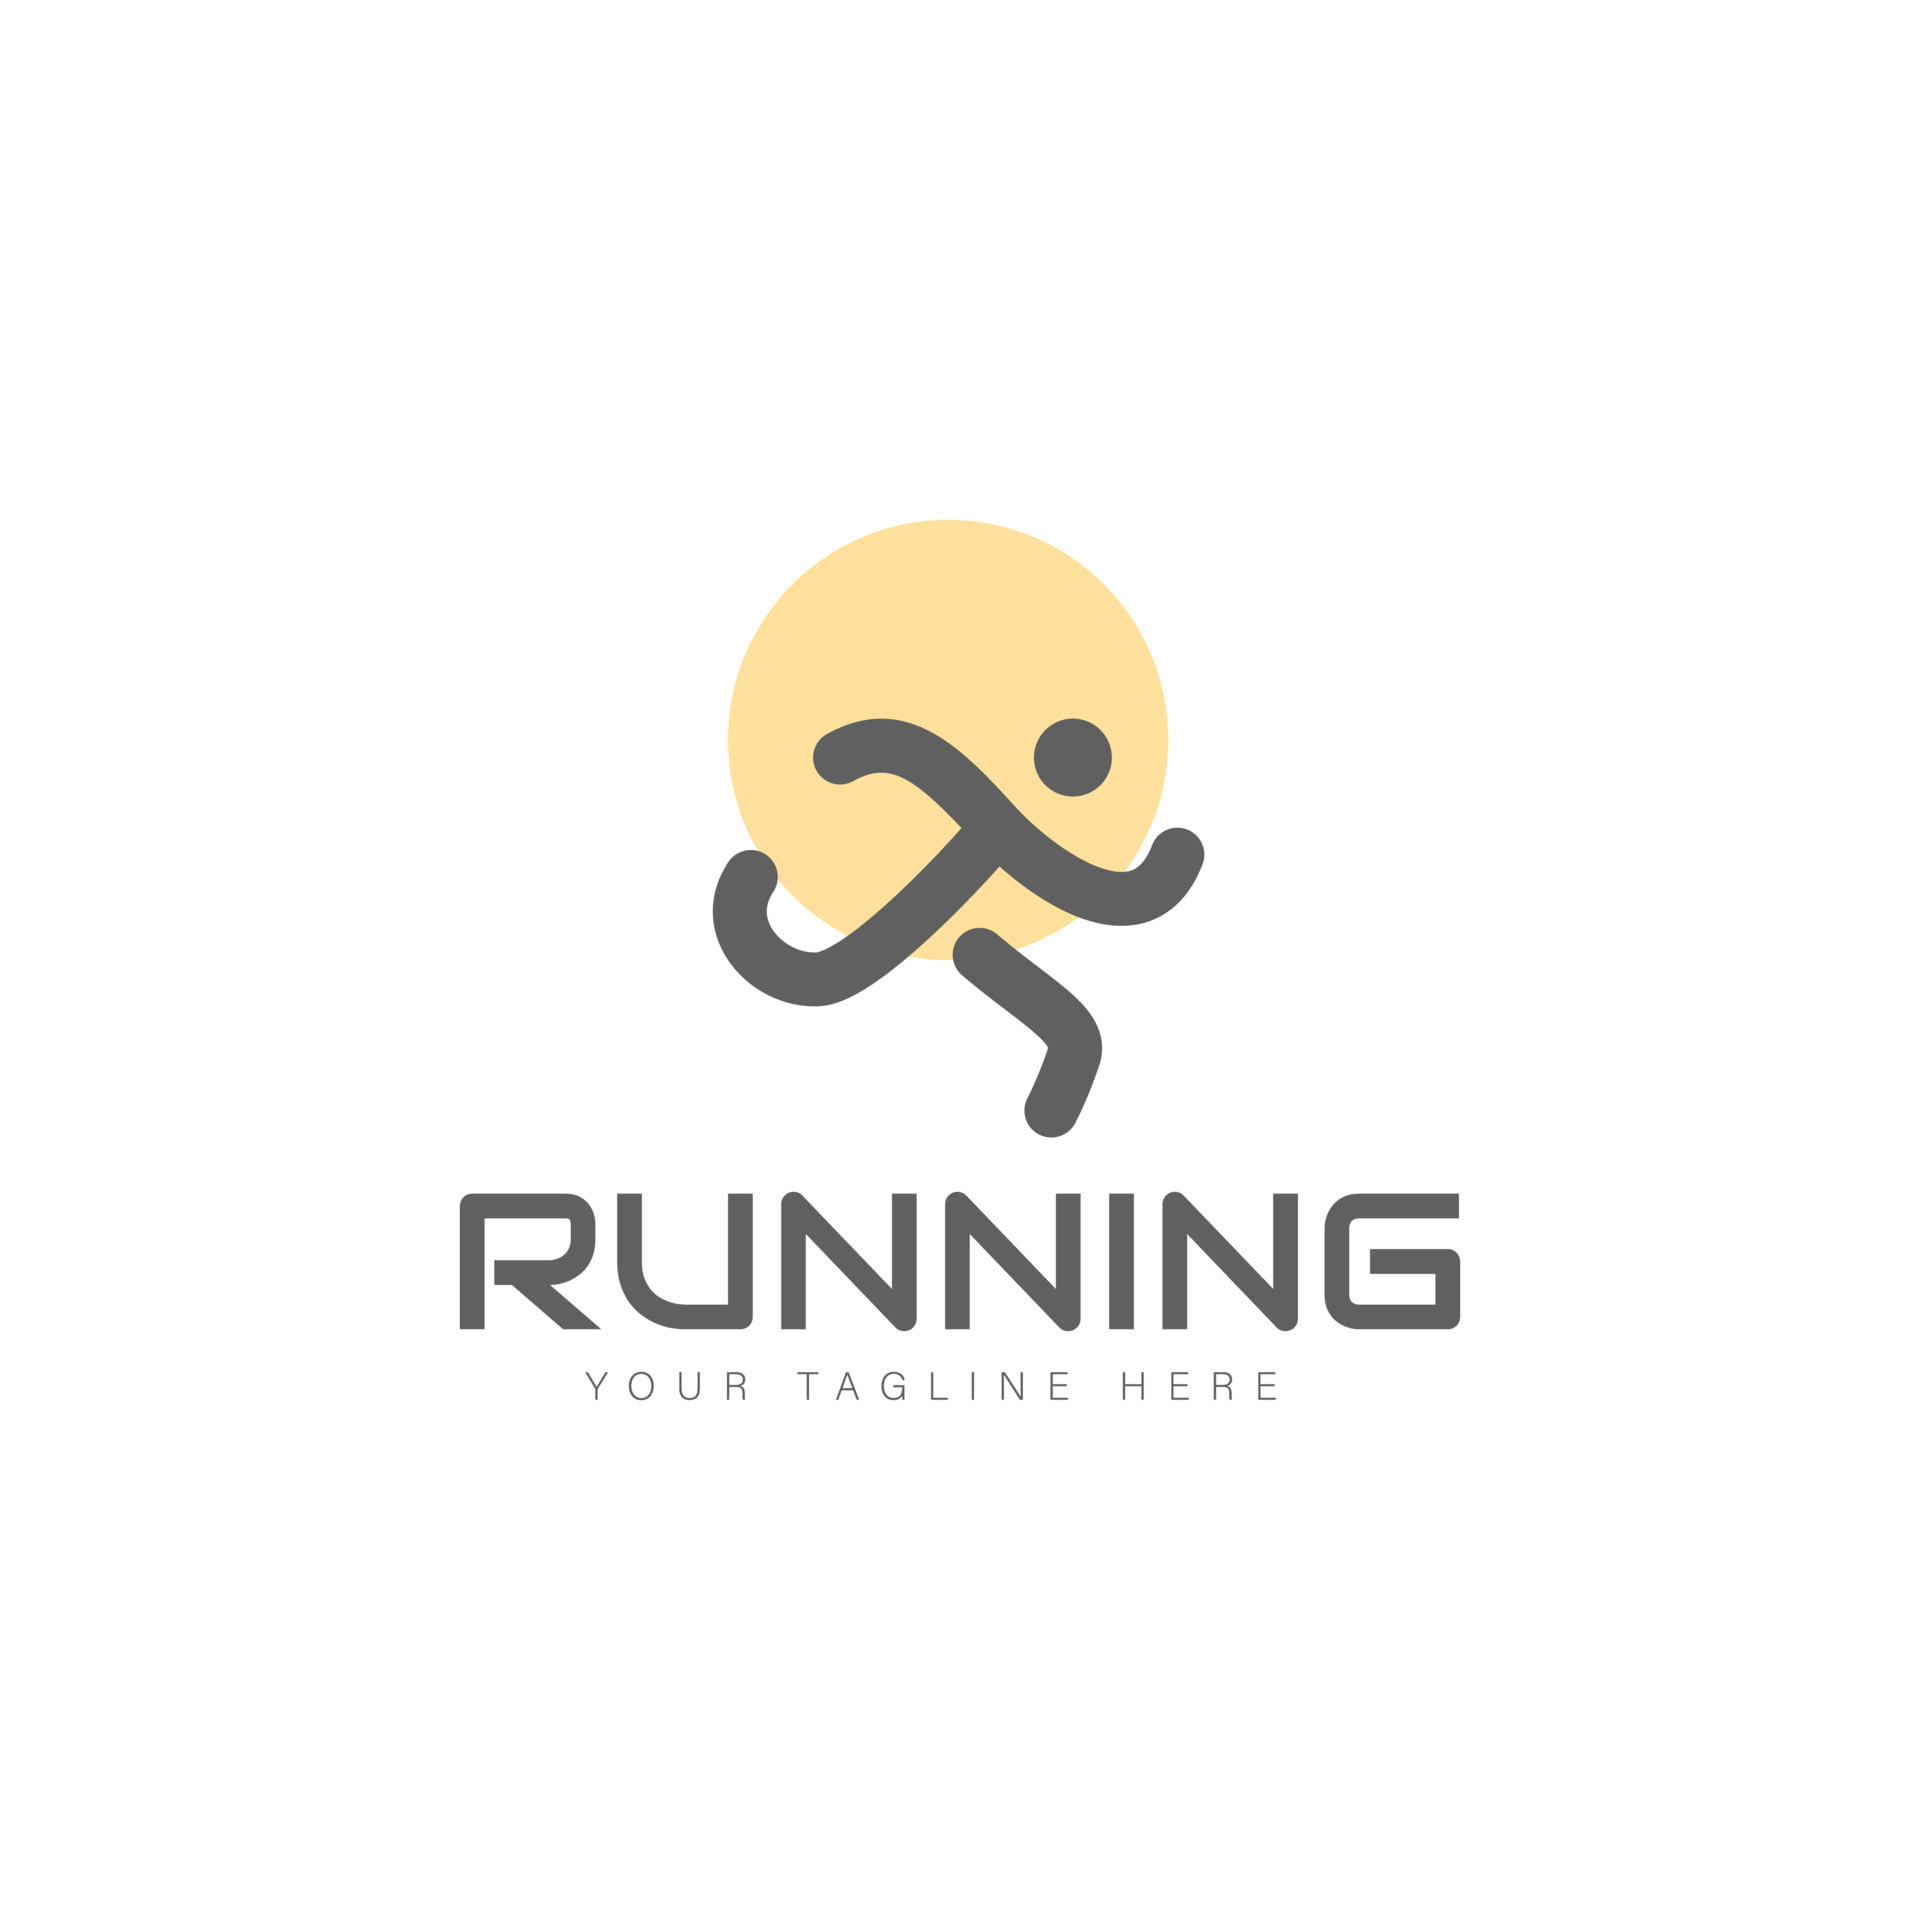 Man line running logo design illustration icon 8331257 Vector Art at ...